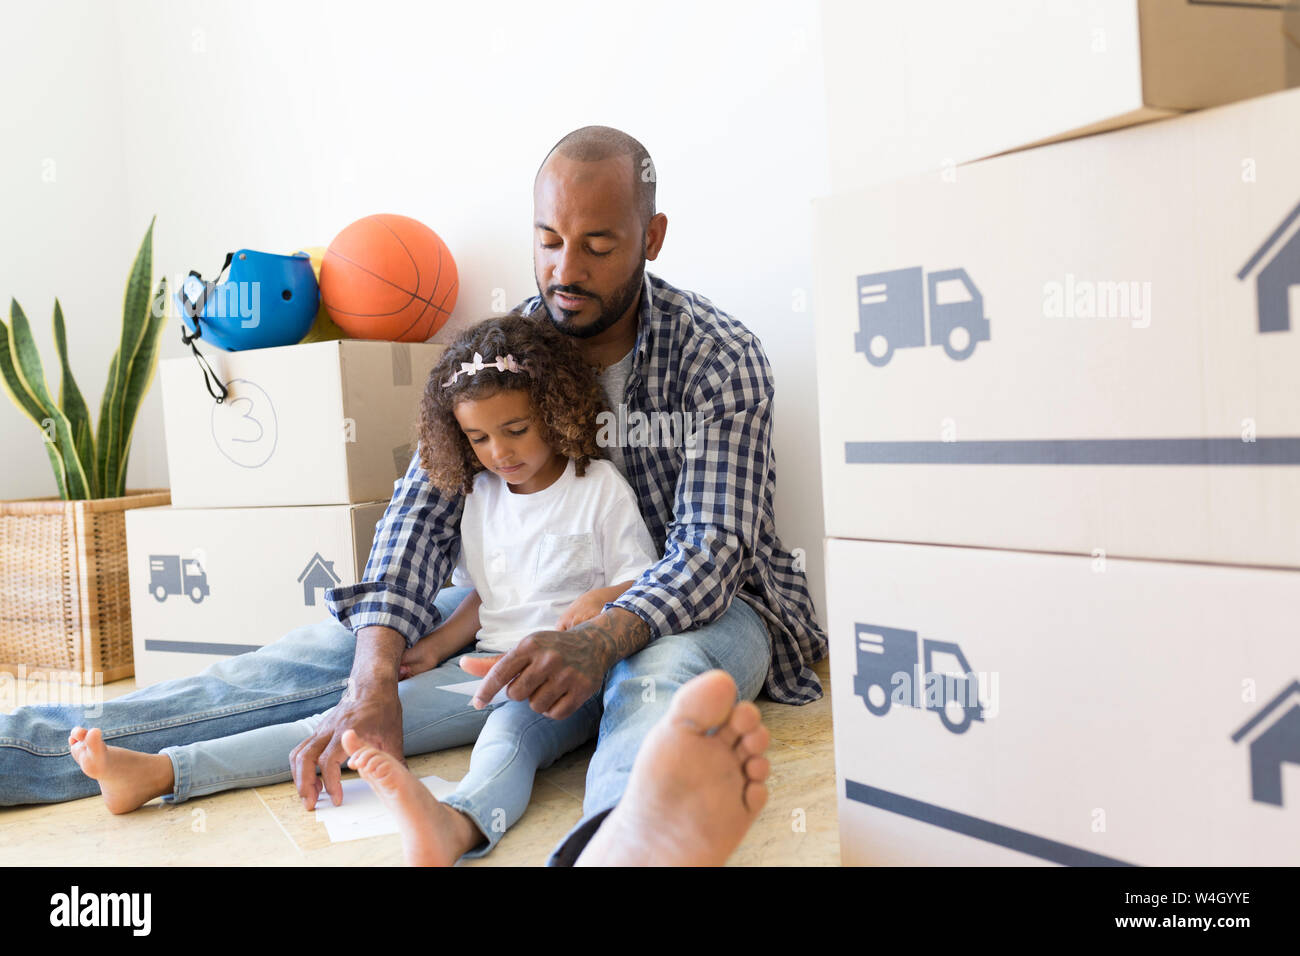 Vater und Tochter sitzen auf dem Boden im neuen Zuhause von Kartons umgeben Stockfoto